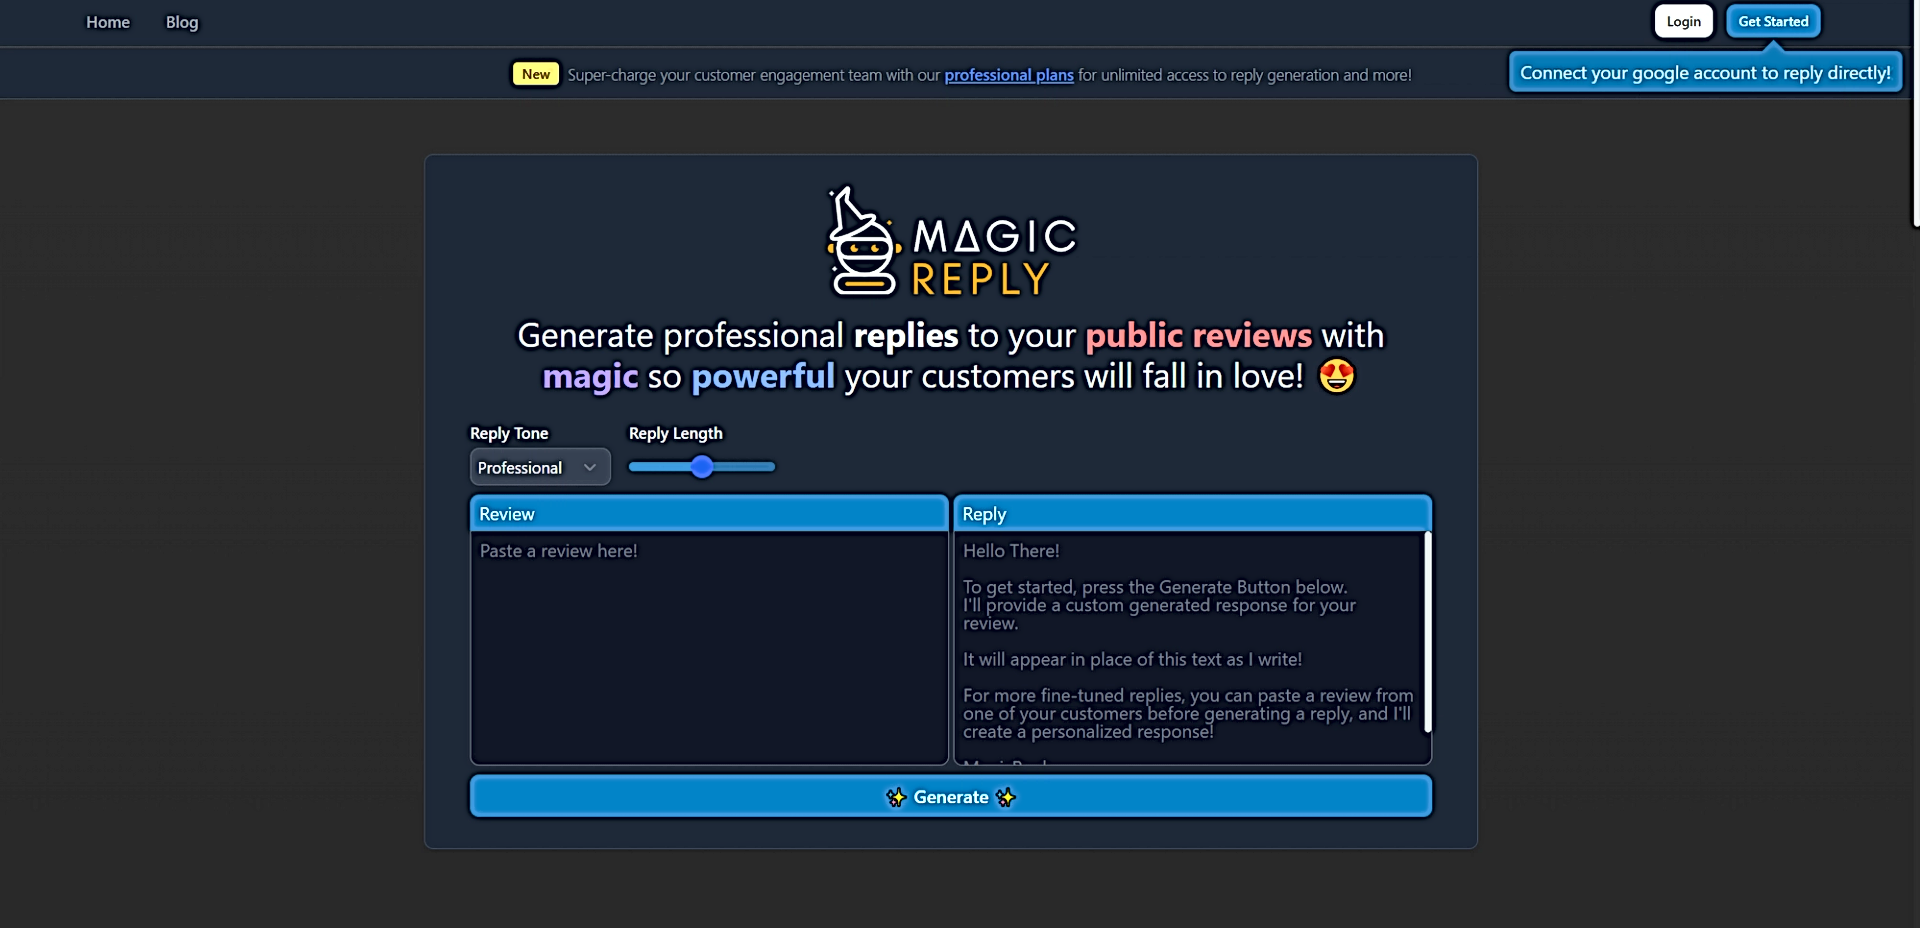 MagicReply AI featured